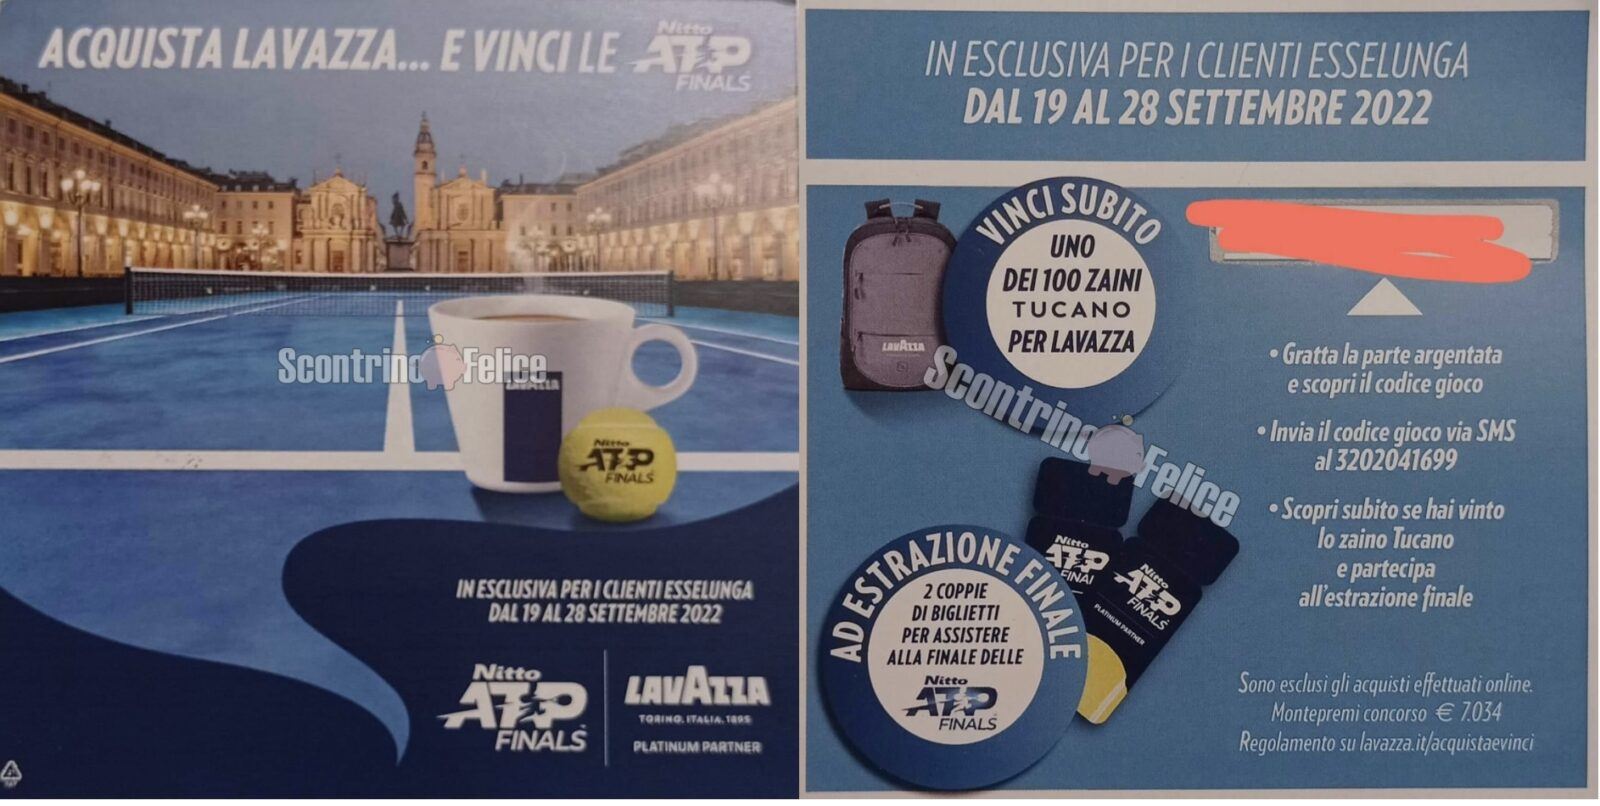 Concorso Lavazza da Esselunga: vinci 100 zaino Tucano e la finale delle Nitto ATP Finals 2022 10